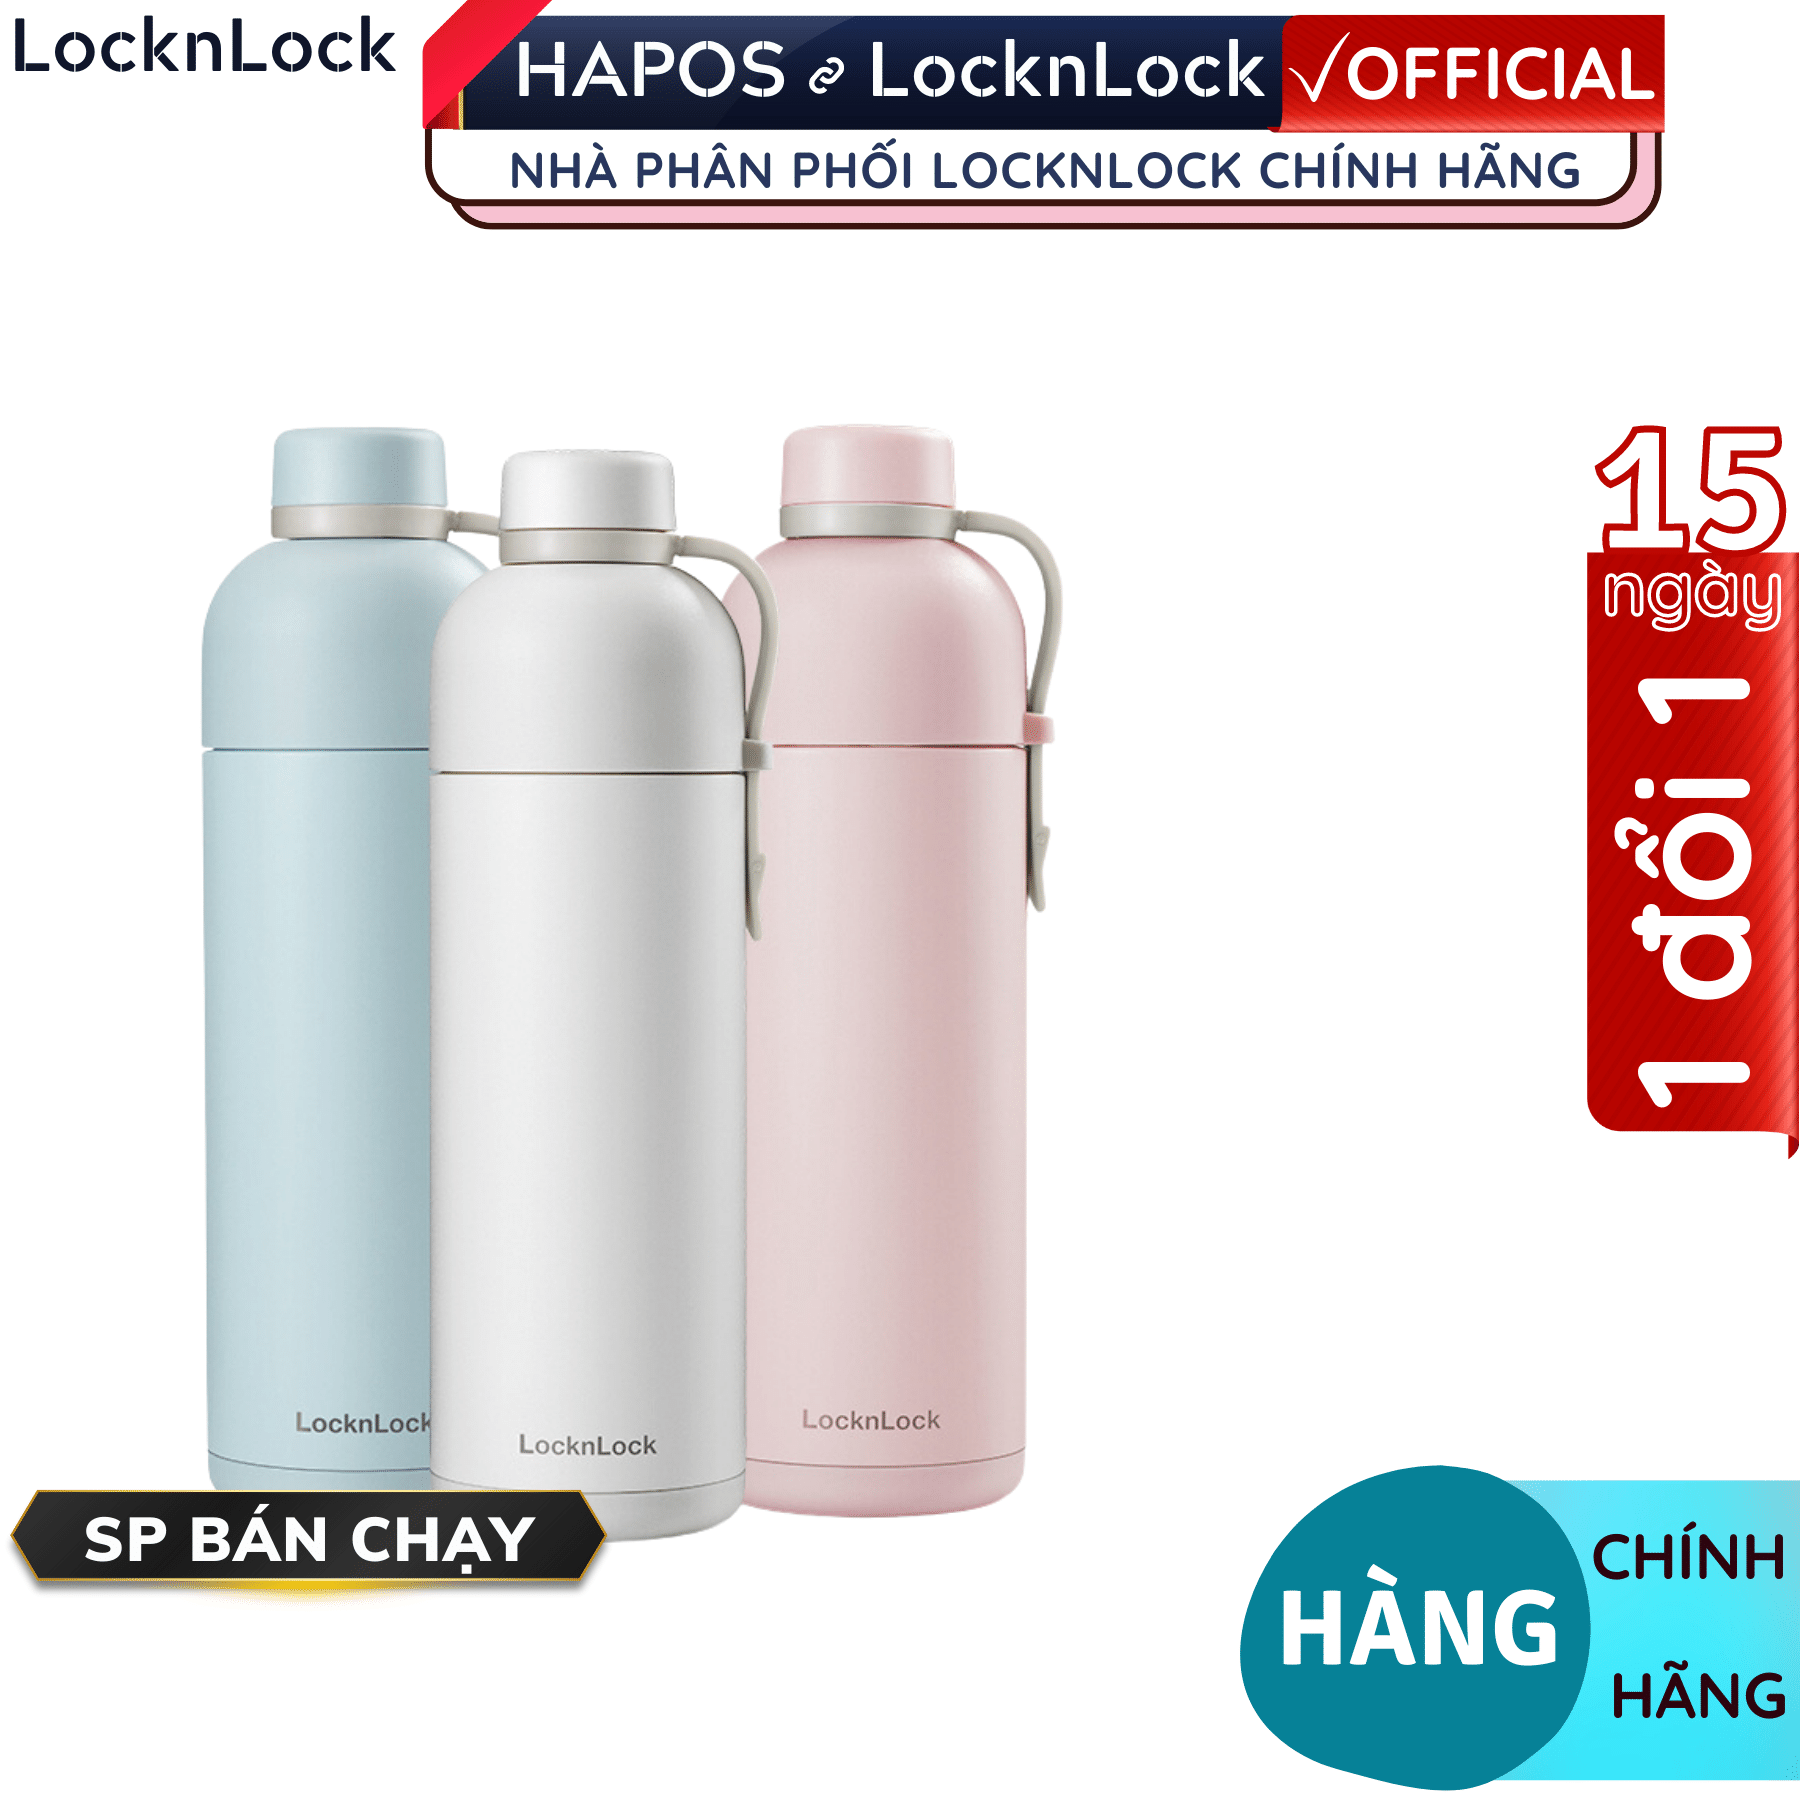 Bình giữ nhiệt Lock&amp;Lock Belt Bottle LHC4267 490ml có quai xách, miệng rộng có thể cho đá - Hàng chính hãng - Hapos